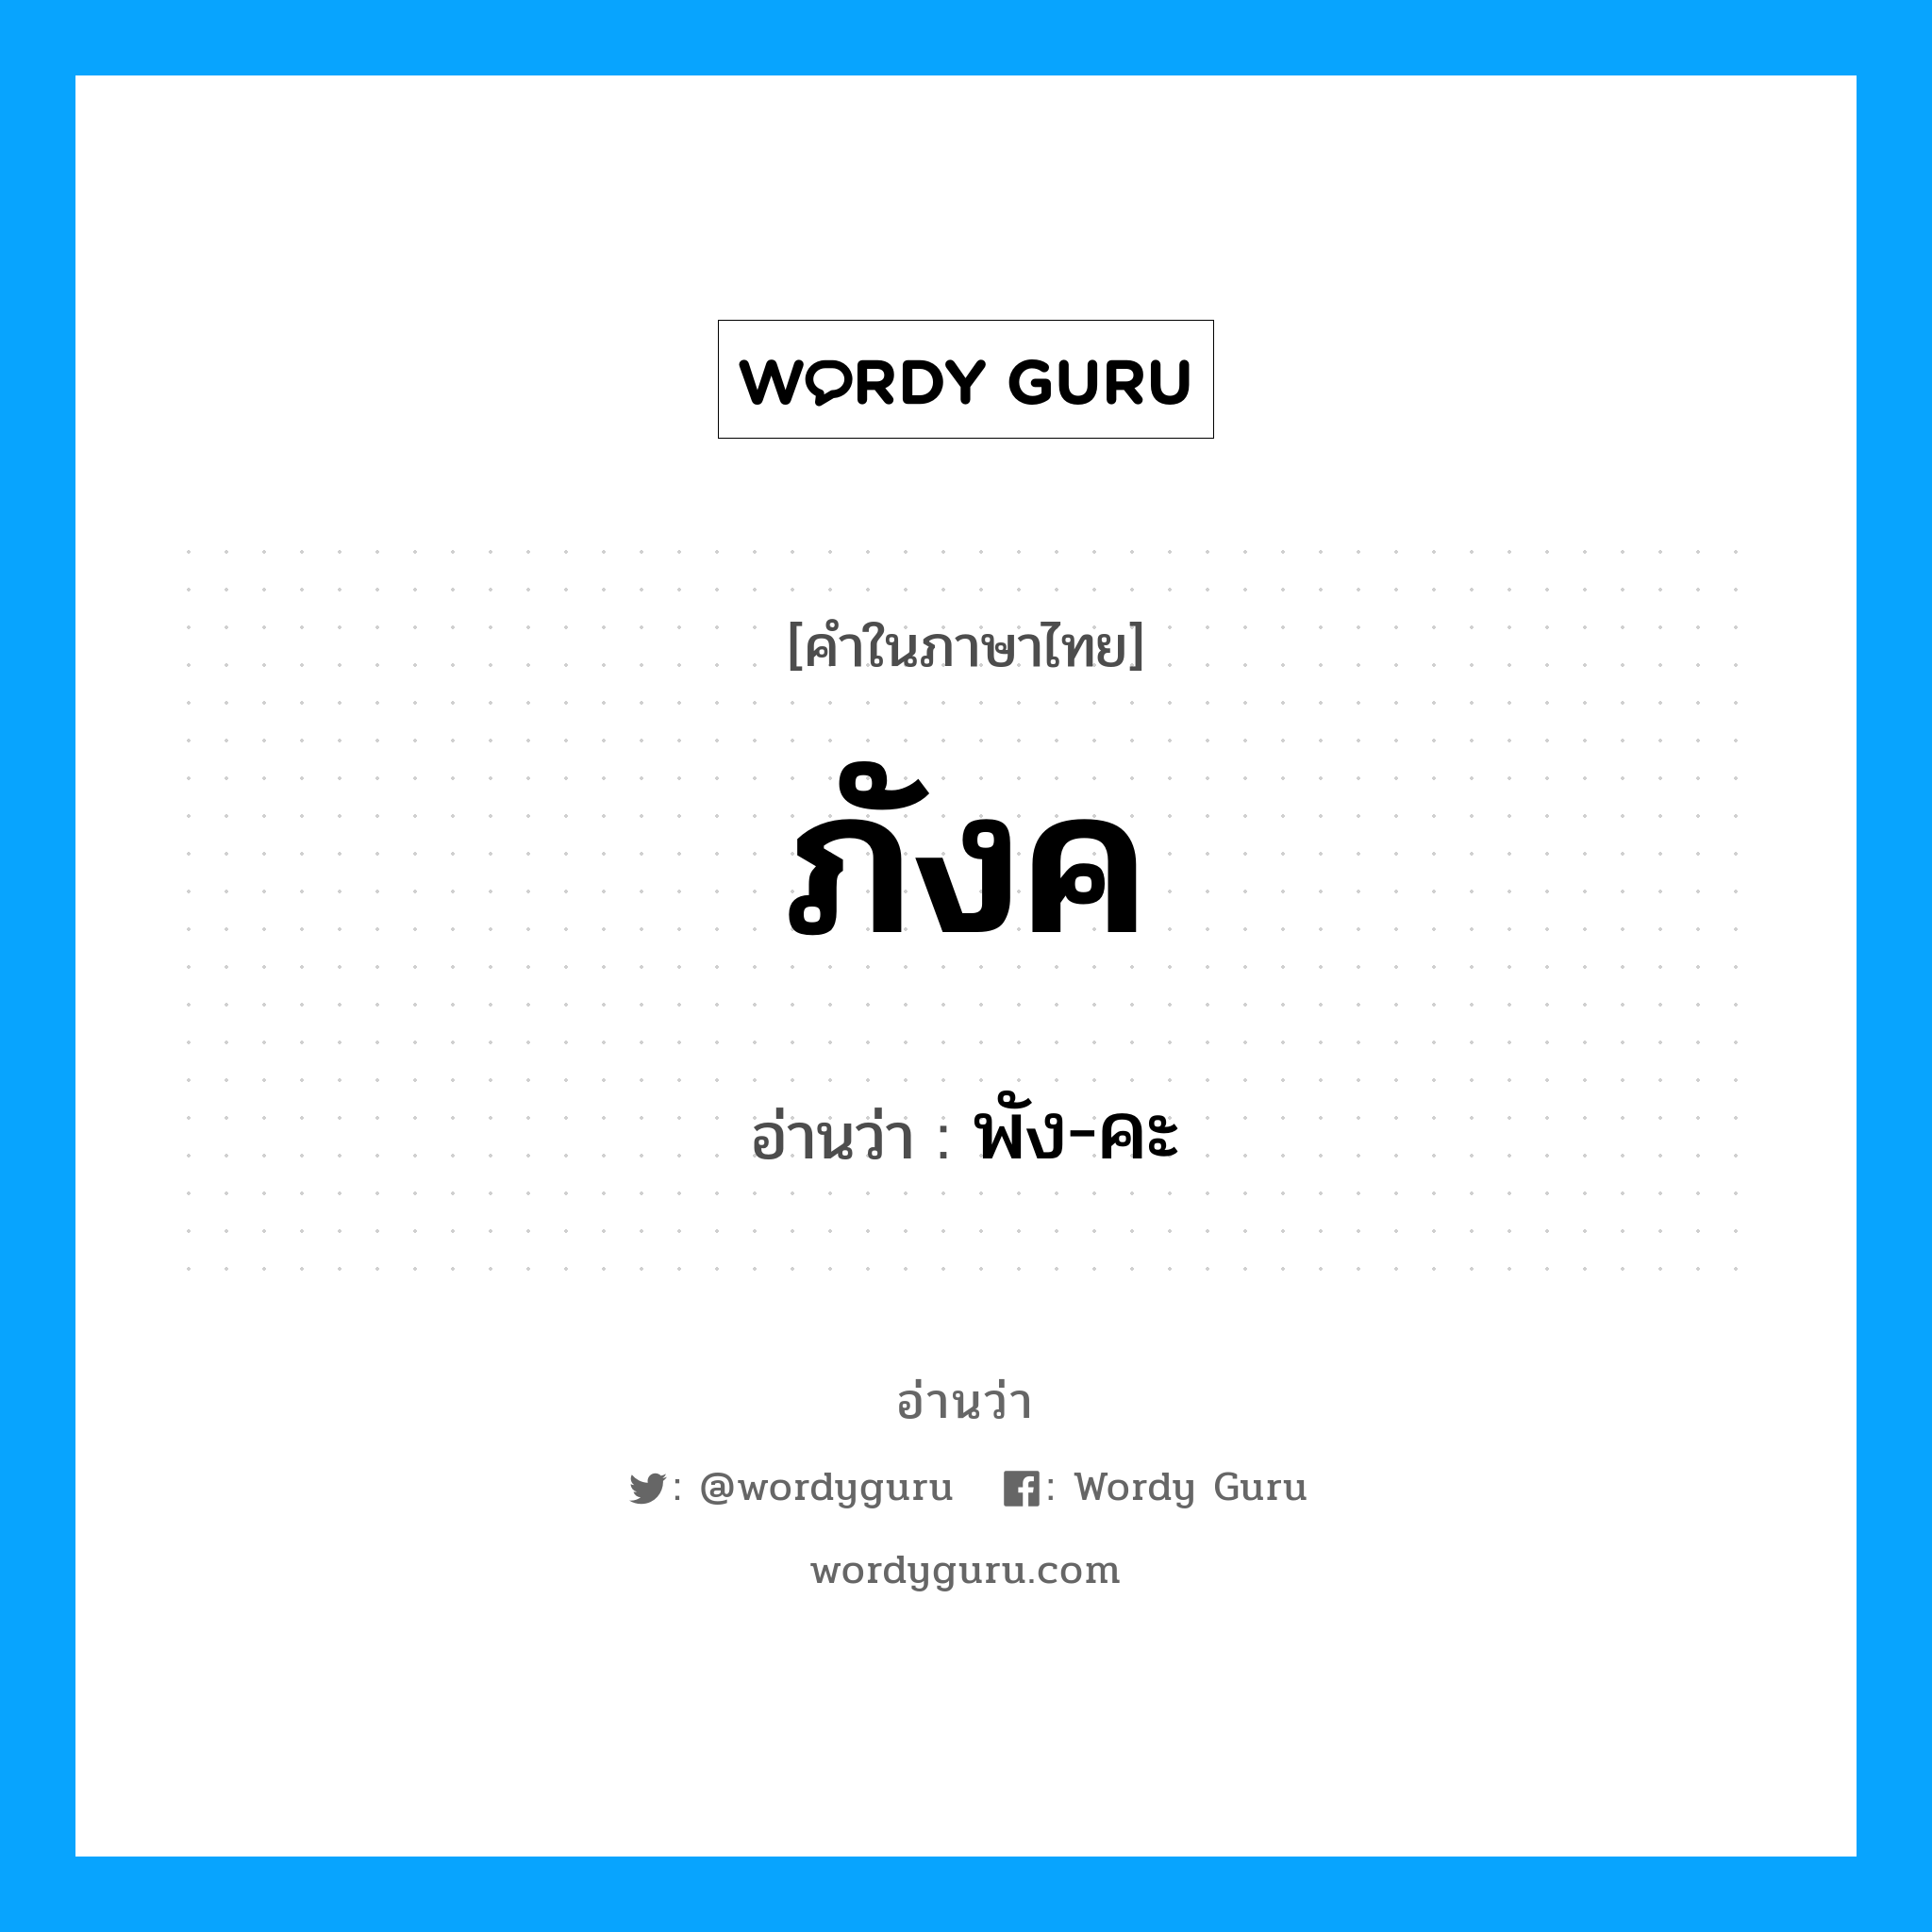 พัง-คะ เป็นคำอ่านของคำไหน?, คำในภาษาไทย พัง-คะ อ่านว่า ภังค